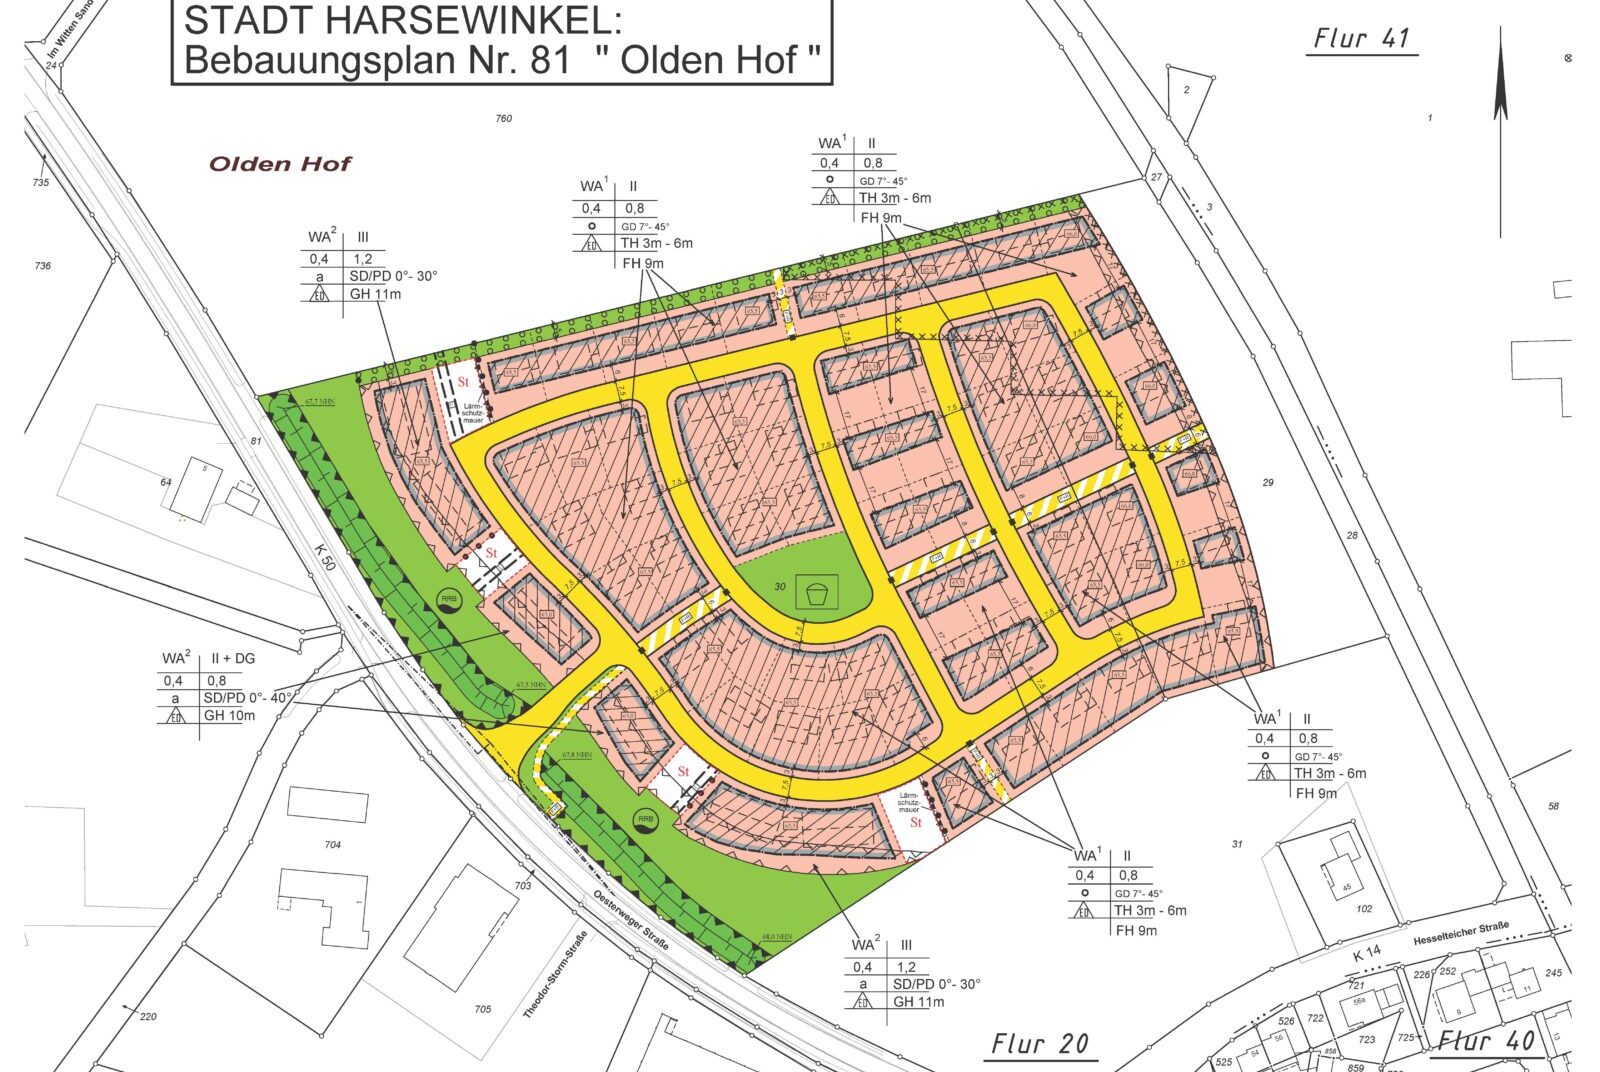 Planzeichnung Bebaungsplan Nr. 81 "Olden Hof" der Stadt Harsewinkel